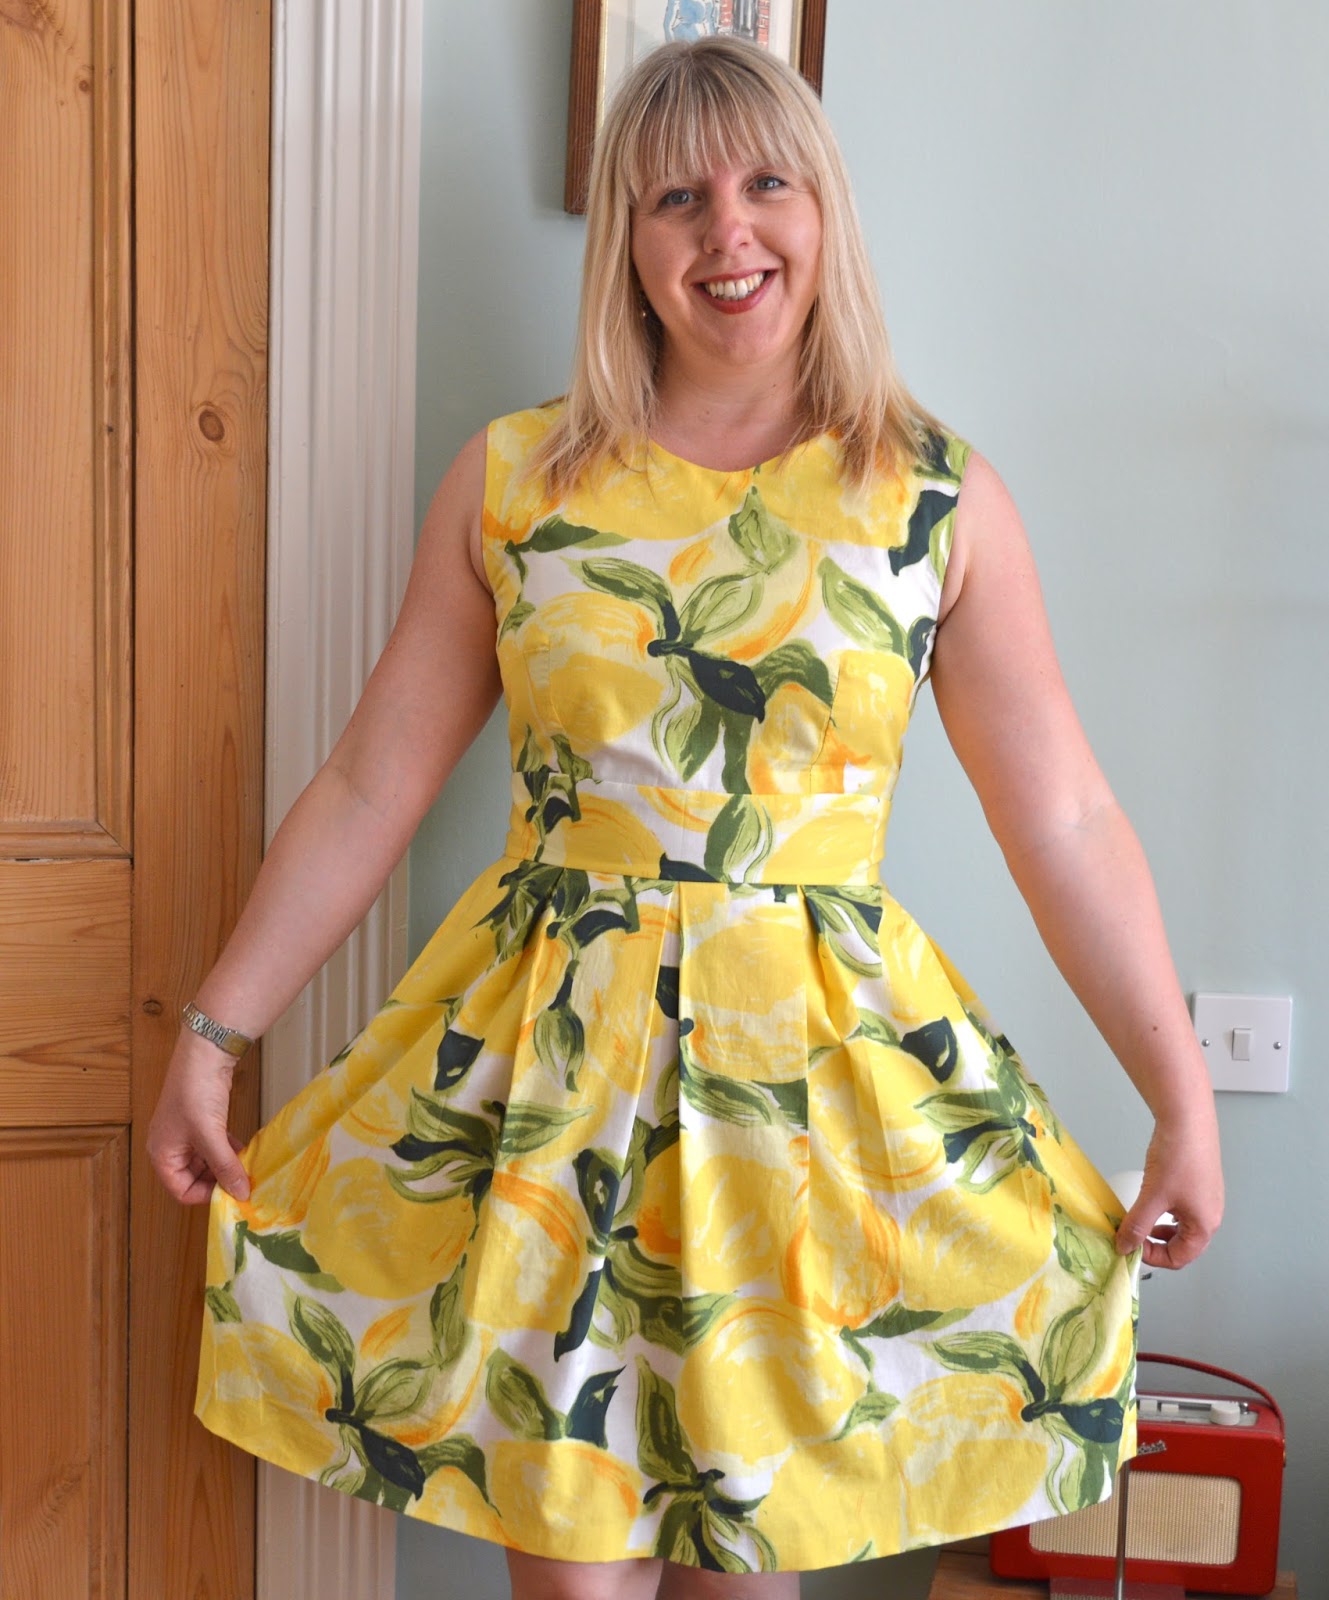 Handmade Jane: Lemon dress - with a nod to Kate Spade